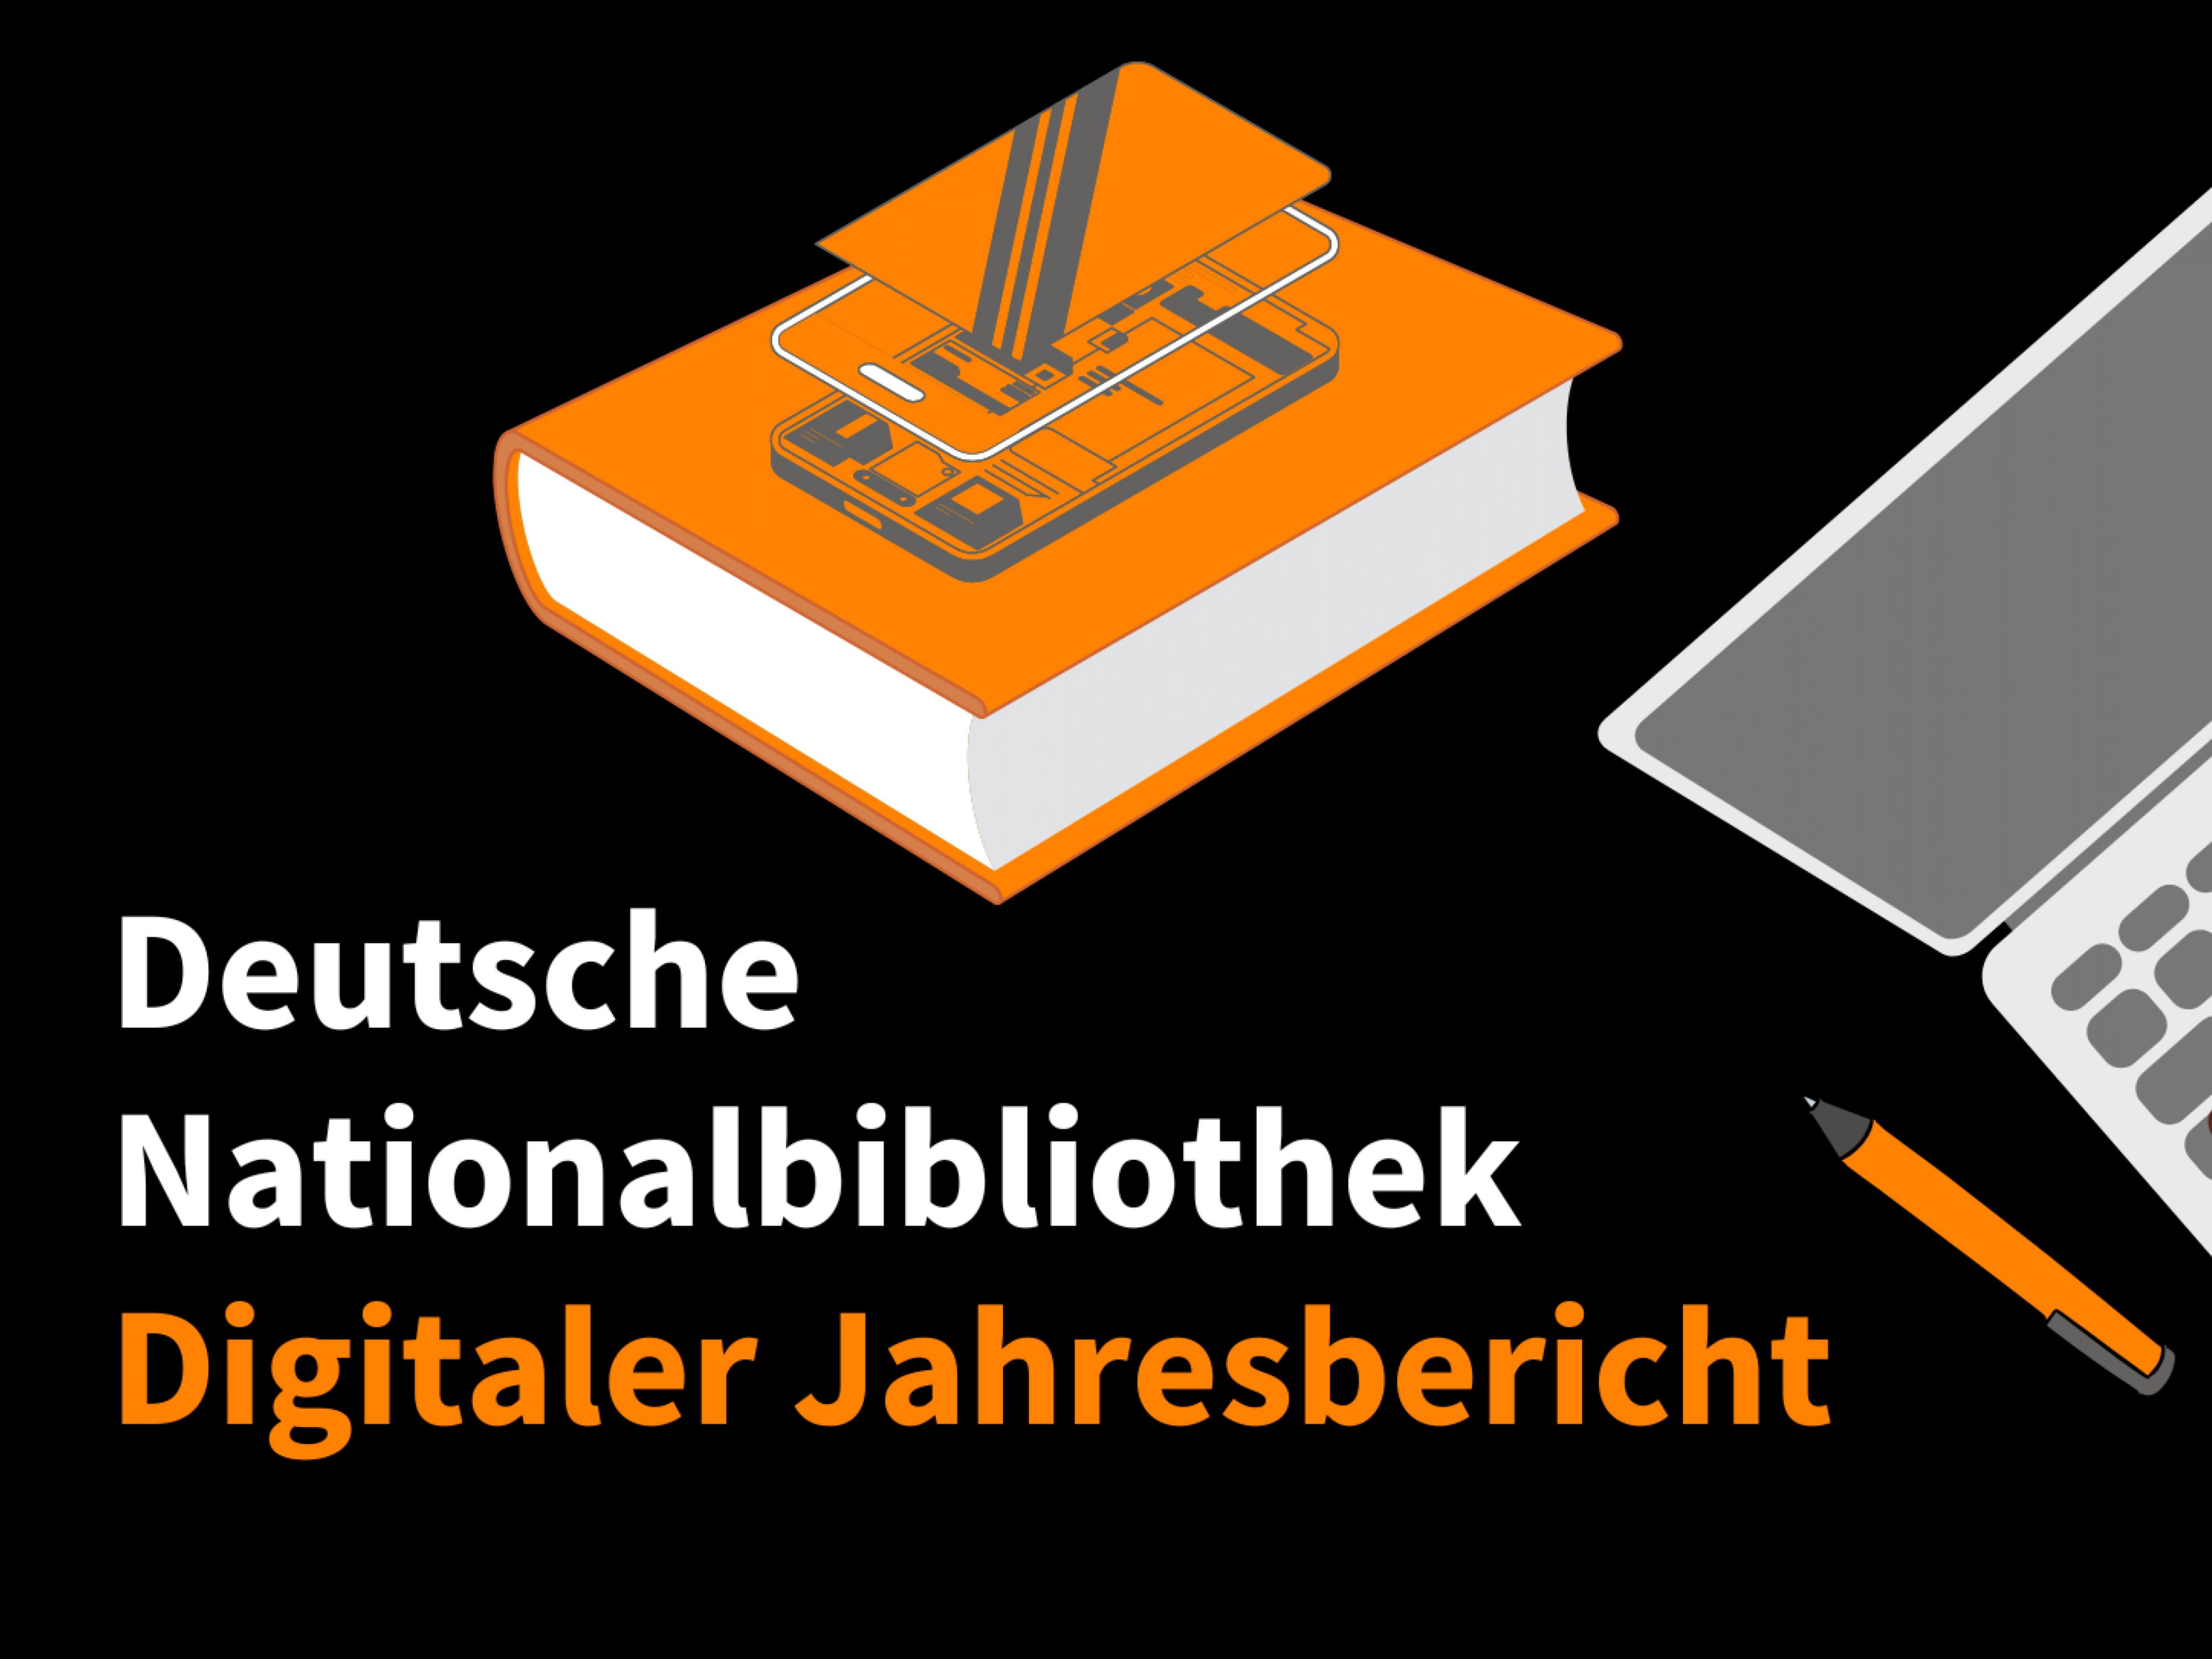 Deutsche Nationalbibliothek: Erster digitaler Jahresbericht online  